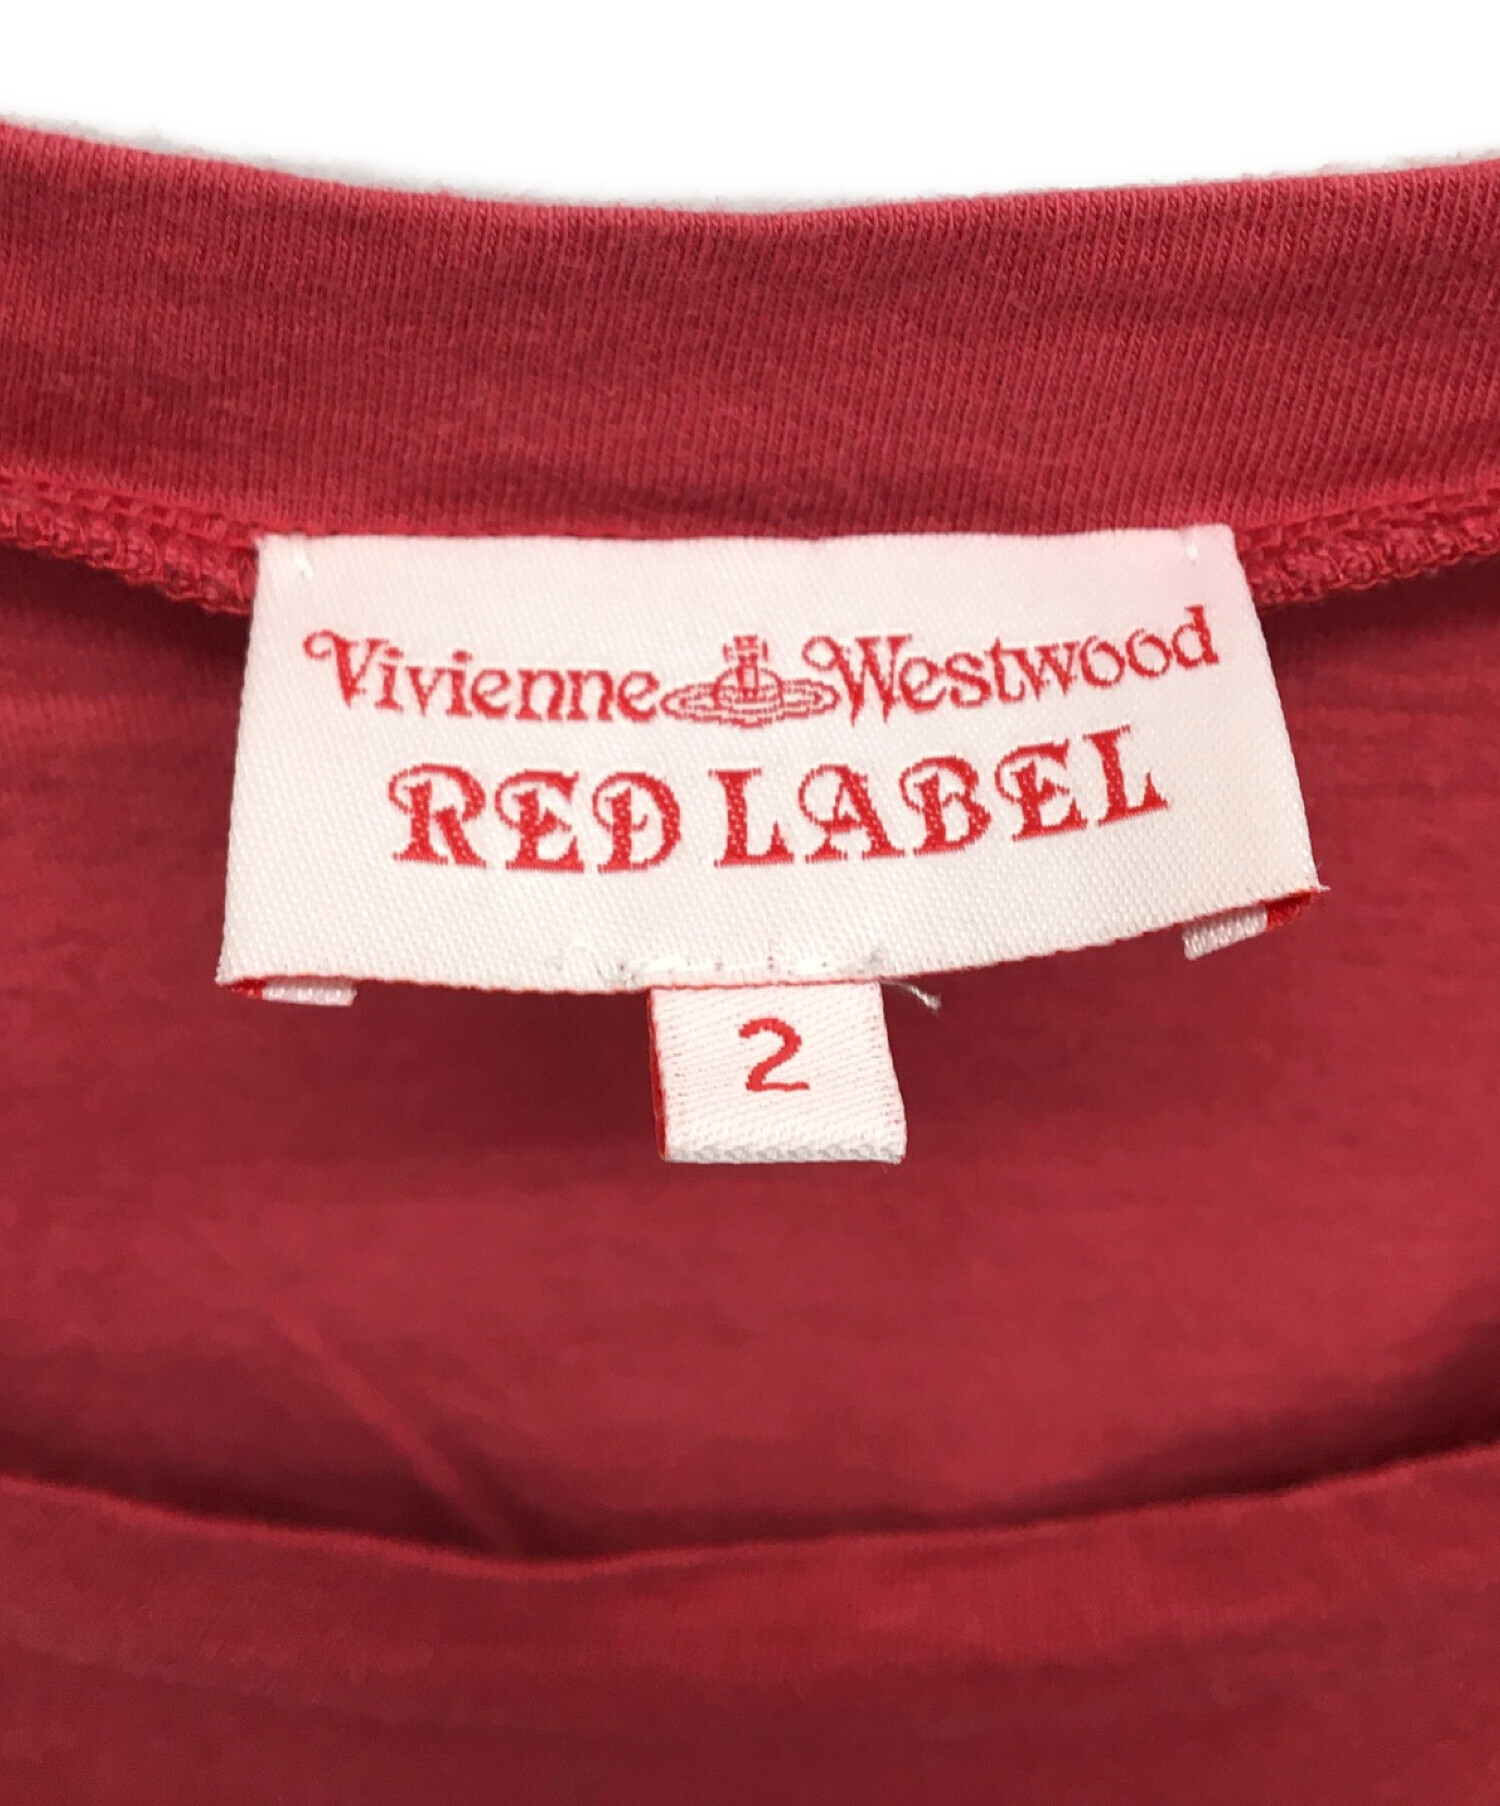 Vivienne Westwood RED LABEL (ヴィヴィアンウエストウッドレッドレーベル) ノースリーブカットソー レッド サイズ:2